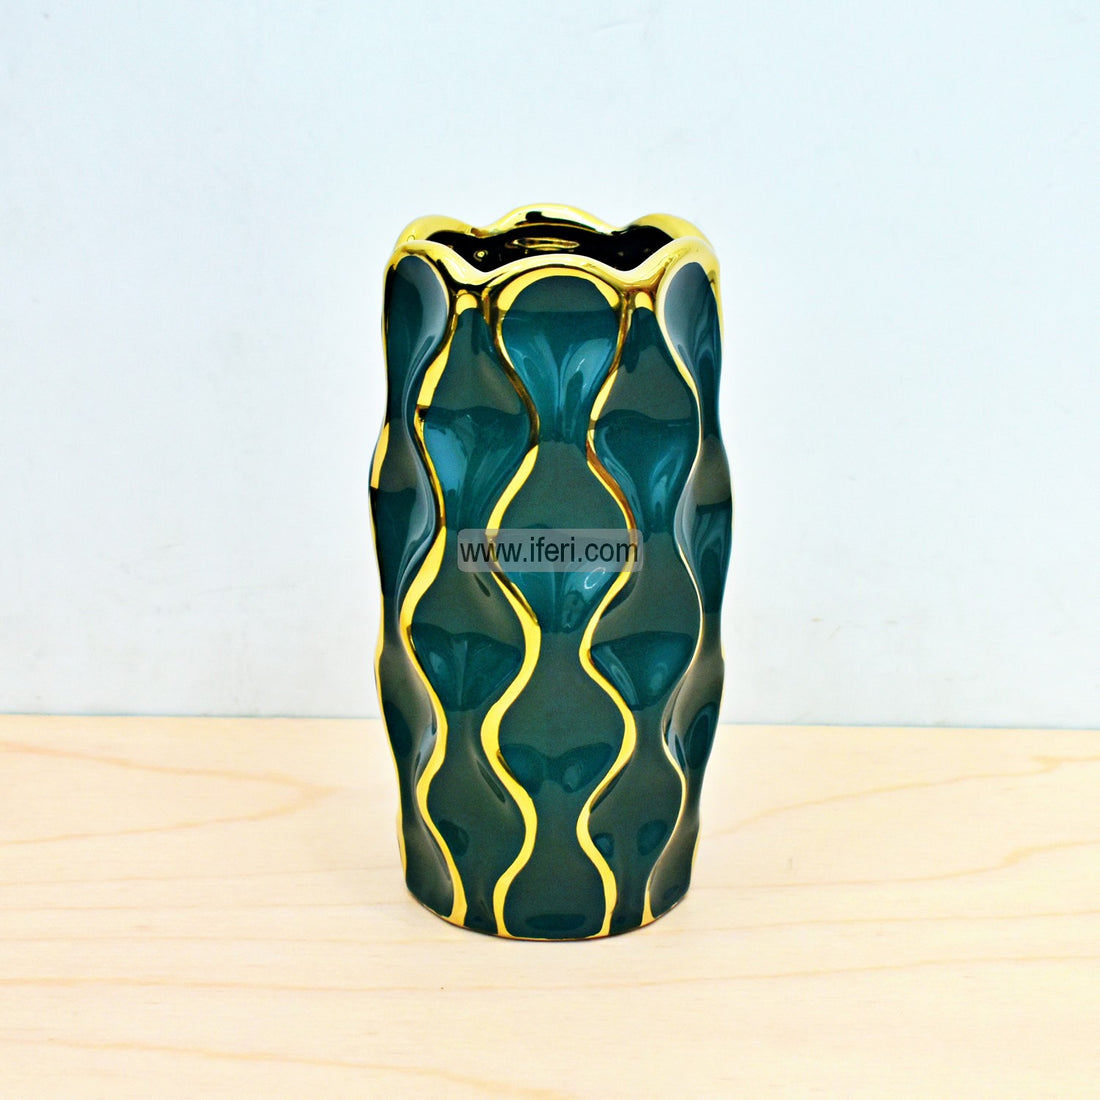 8 Inch Exclusive Ceramic Decorative Flower Vase FH2166